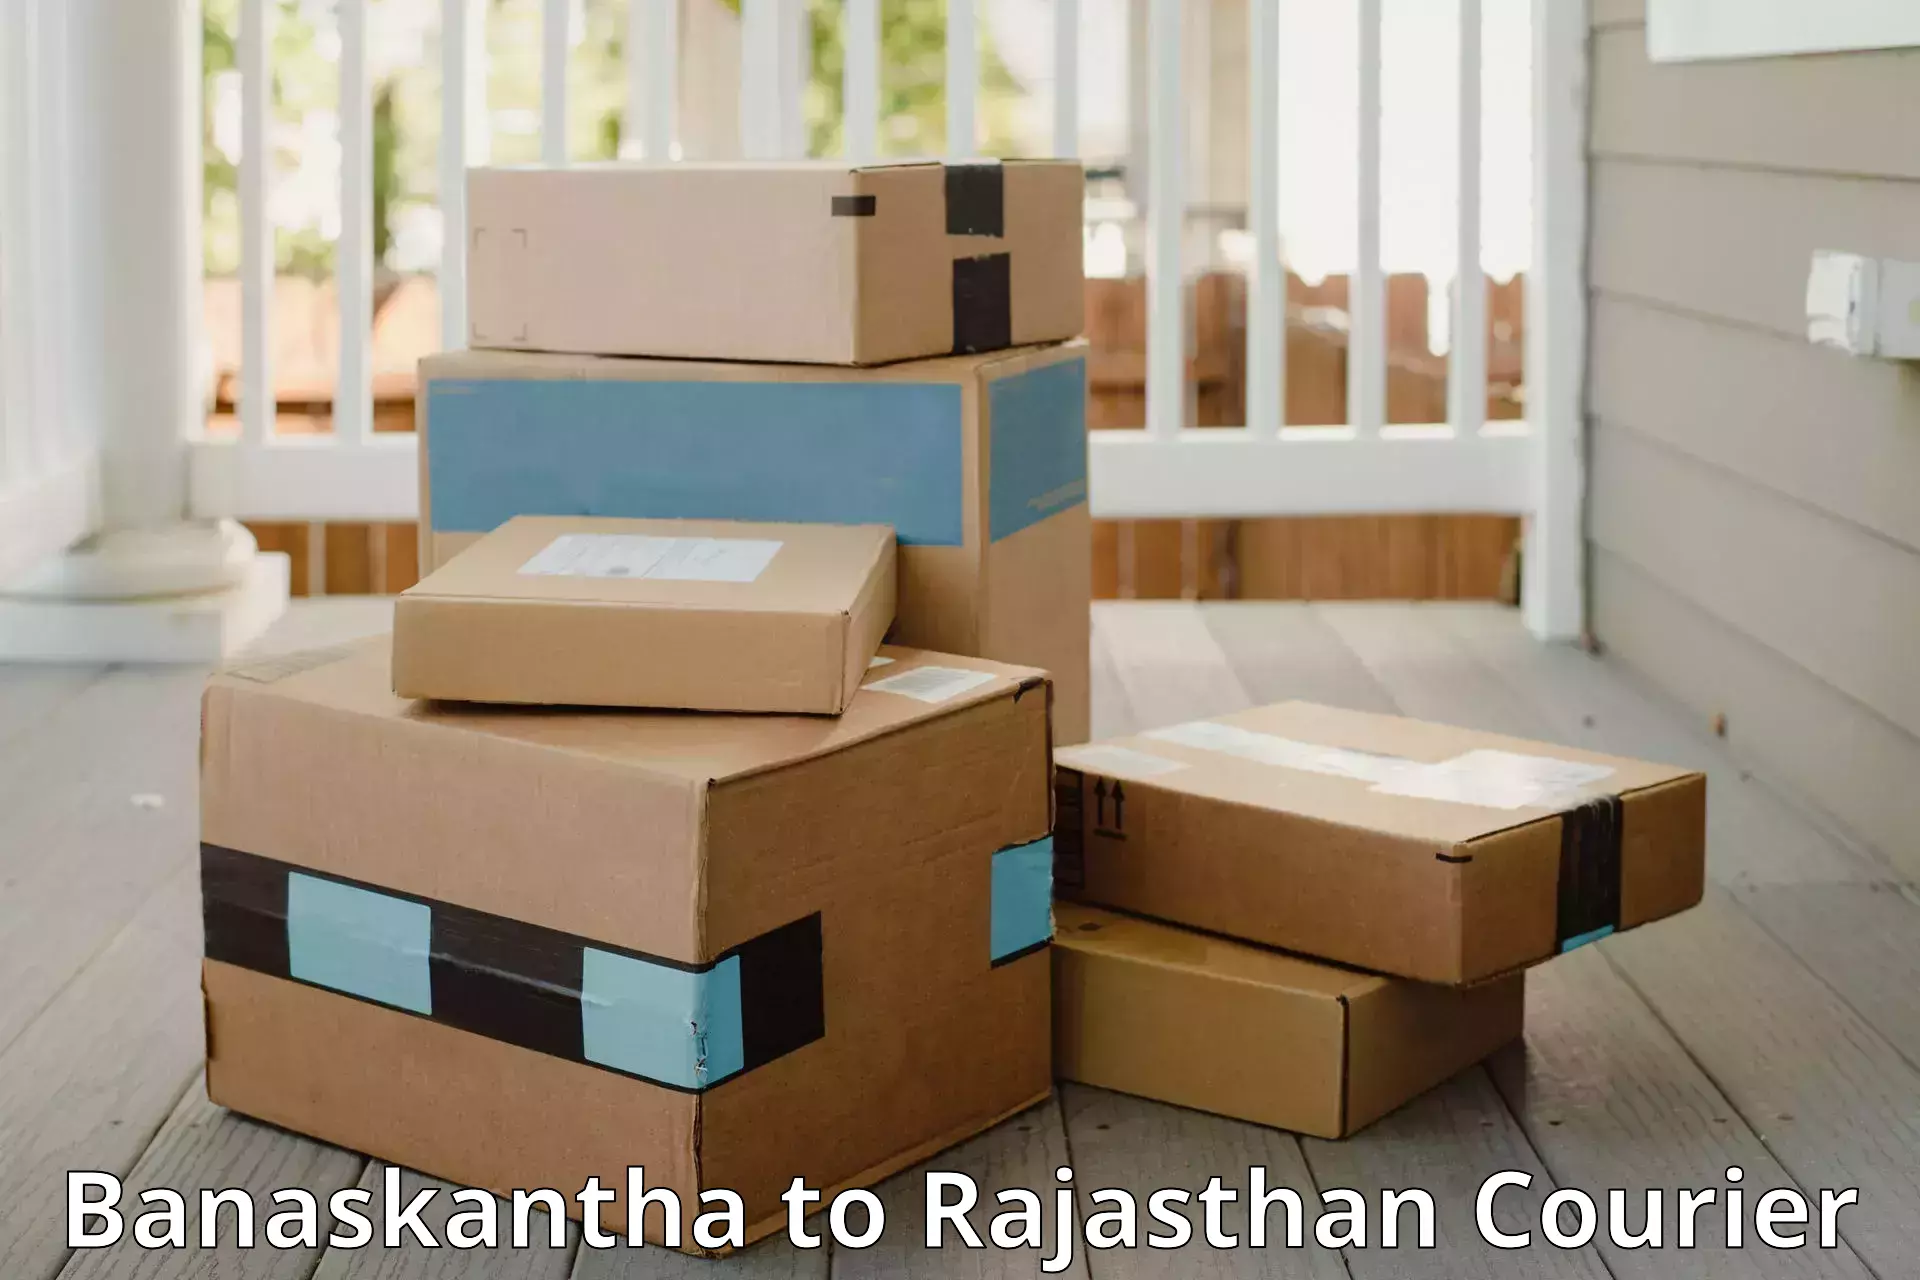 Baggage transport technology Banaskantha to Rajasthan